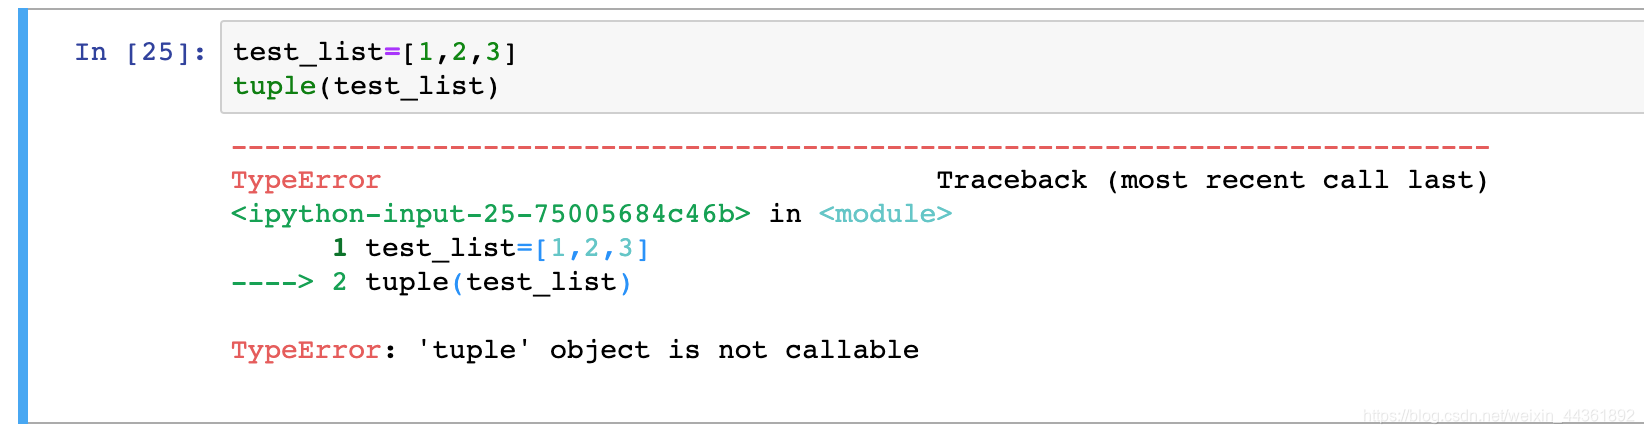 Typeerror: 'Tuple' Object Is Not Callable_阿龙-梦想家的博客-Csdn博客